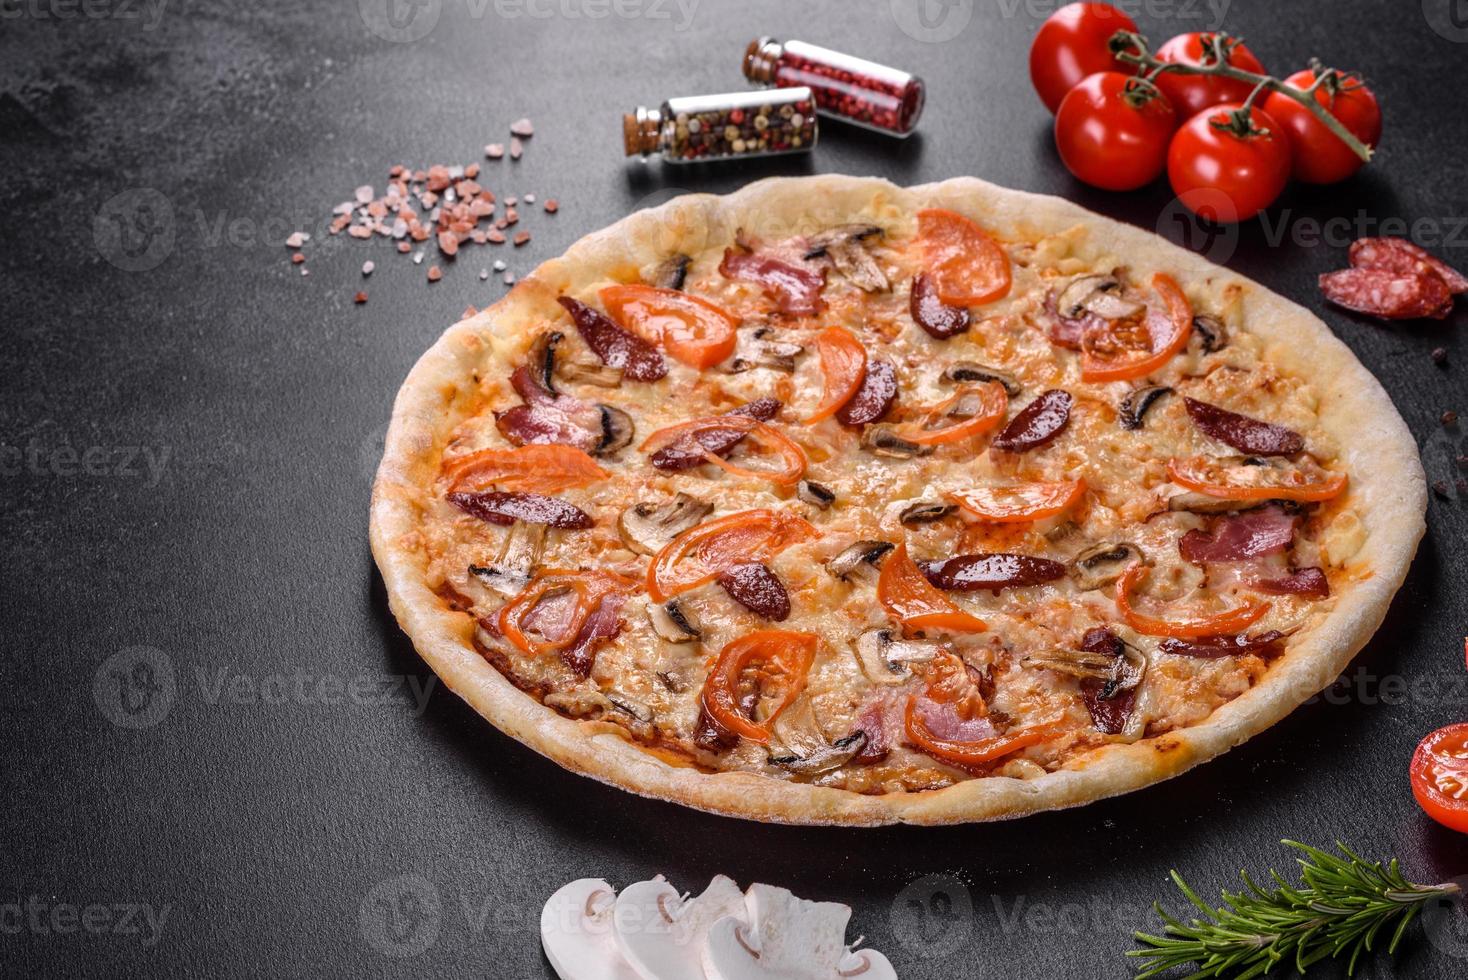 délicieuse pizza fraîche faite dans un four à sole avec des tomates, des saucisses et des champignons photo